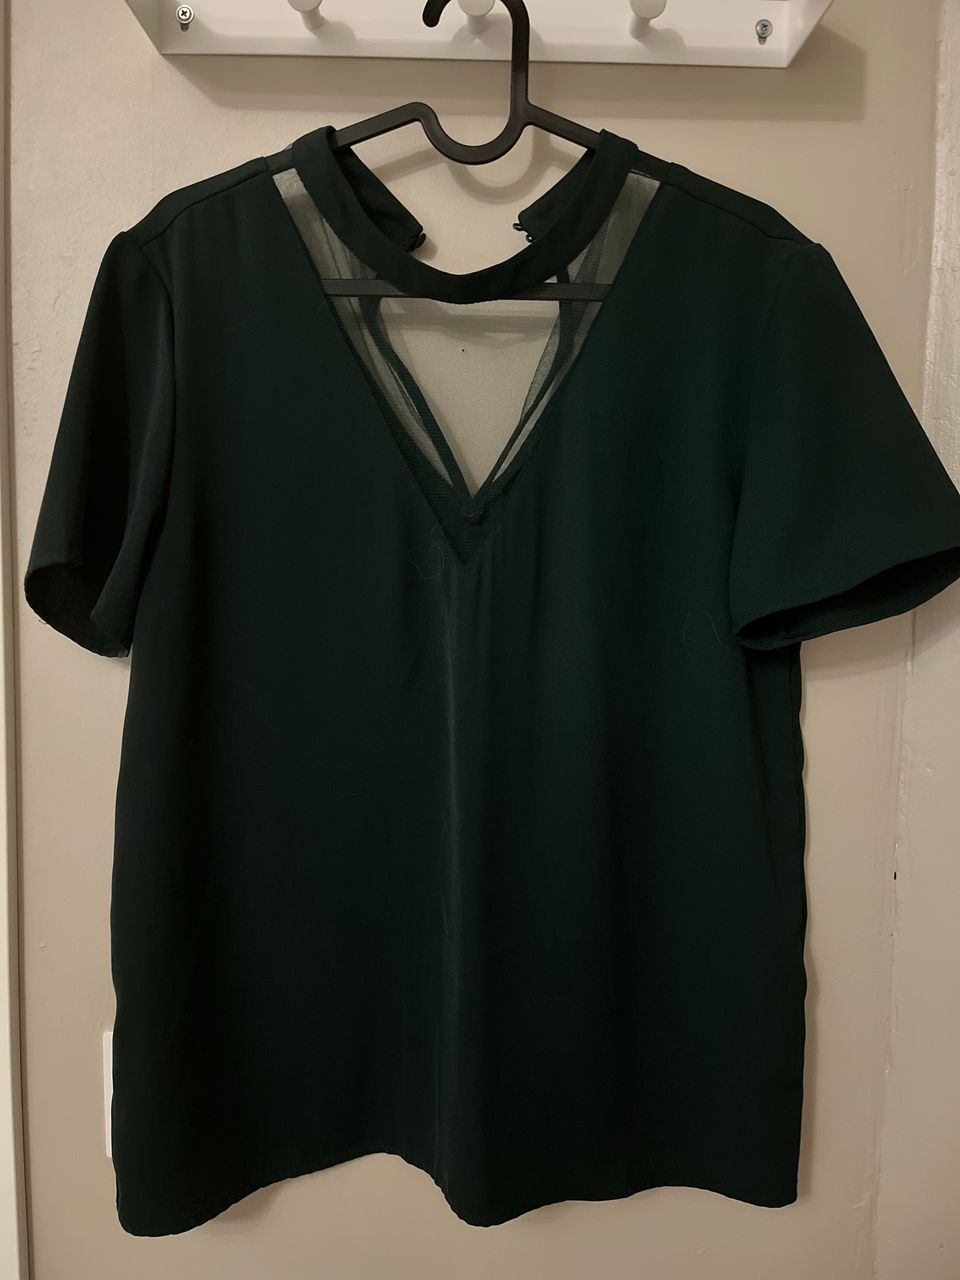 Vilan tummanvihreä paita (M)